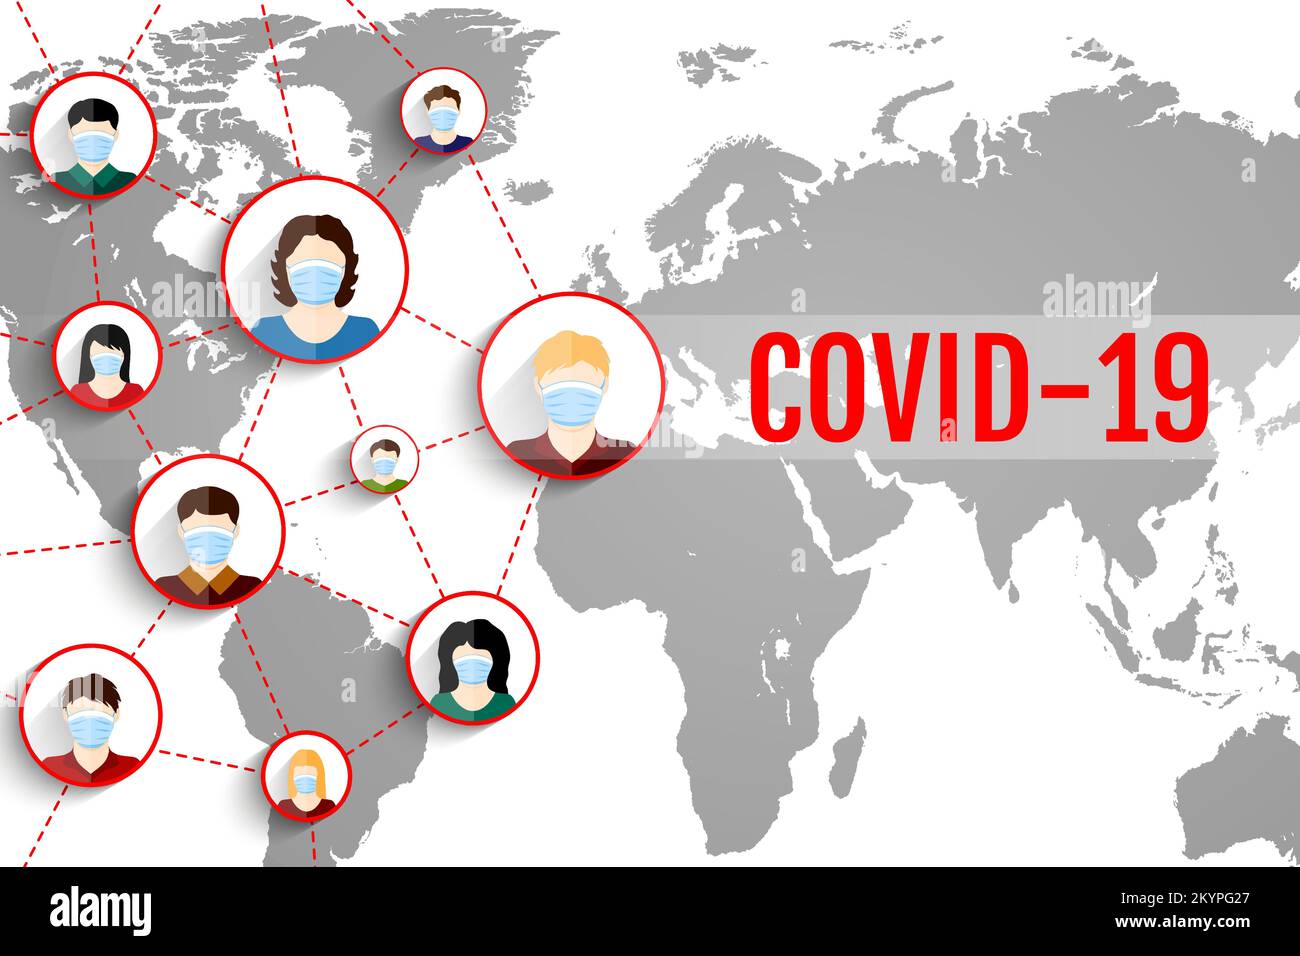 Personas en respiradores en el fondo del mapa del mundo. Concepto CORONAVIR COVID-19. Ilustración vectorial Ilustración del Vector